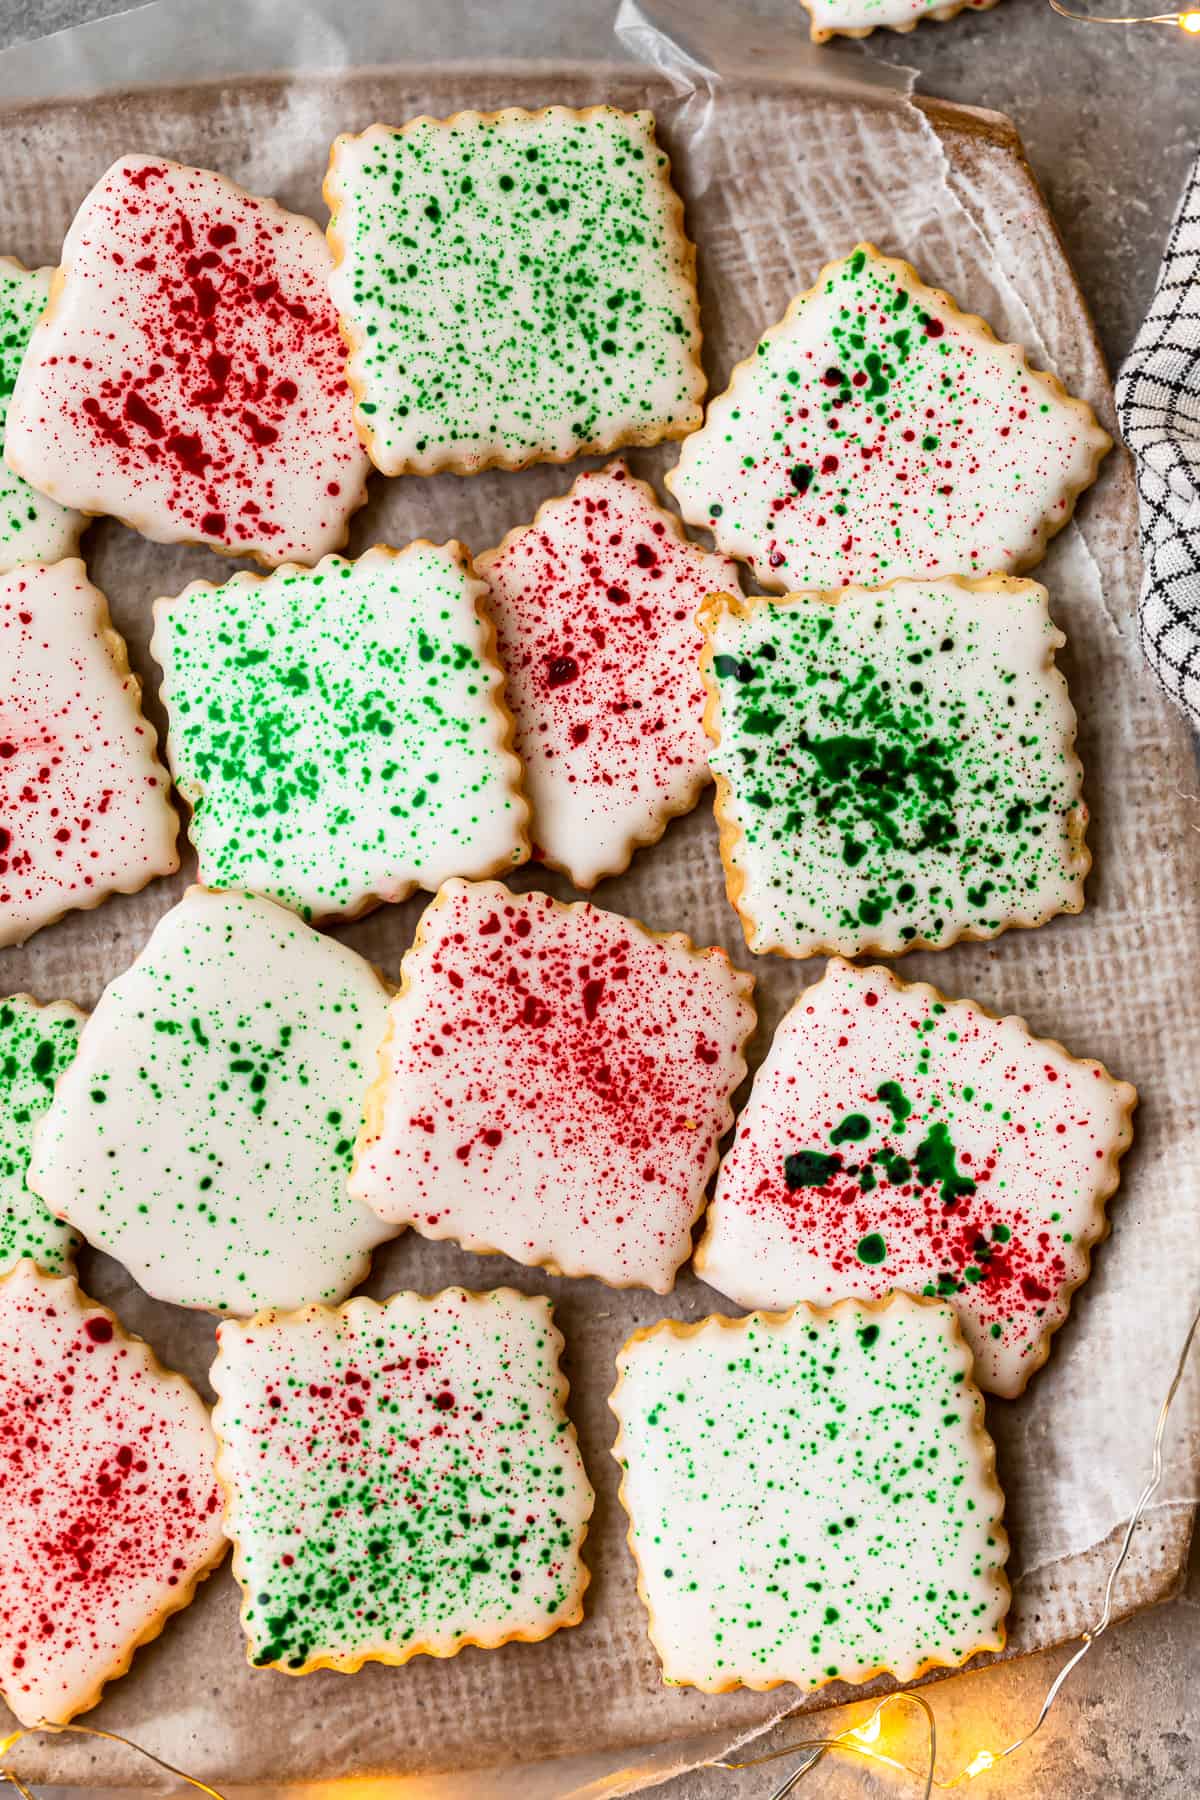 https://www.thecookierookie.com/wp-content/uploads/2021/11/splatter-paint-christmas-cookies-recipe-3.jpg